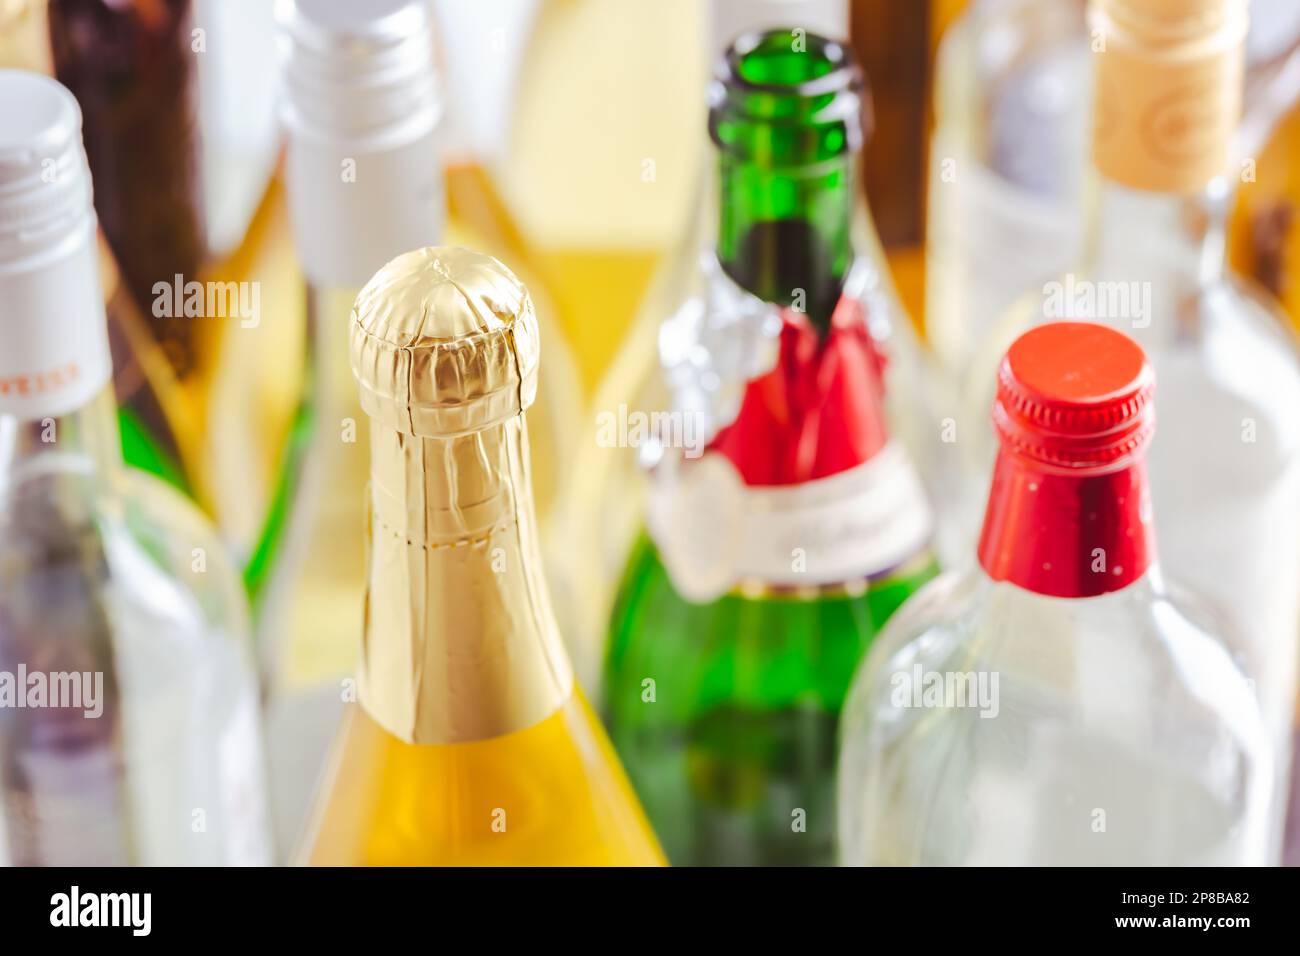 Volle und leere Flaschen verschiedener alkoholischer Getränke, Missbrauch und Alkoholabhängigkeit. Alkoholismusbegriff. Stockfoto